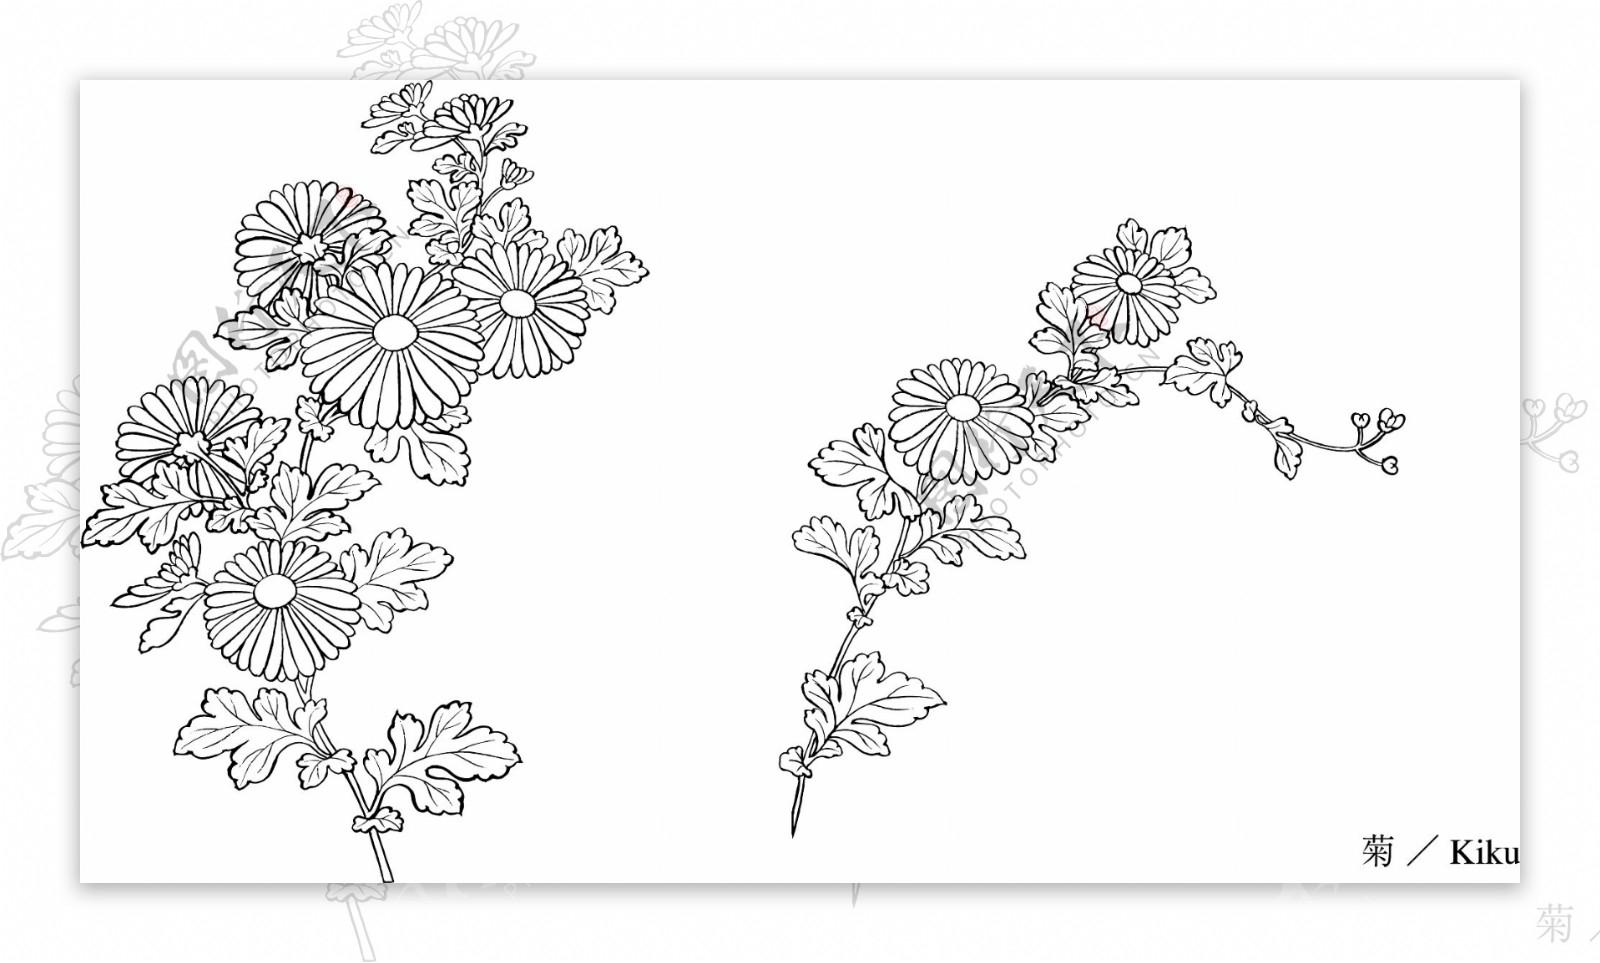 线描植物花卉矢量素材31菊花.